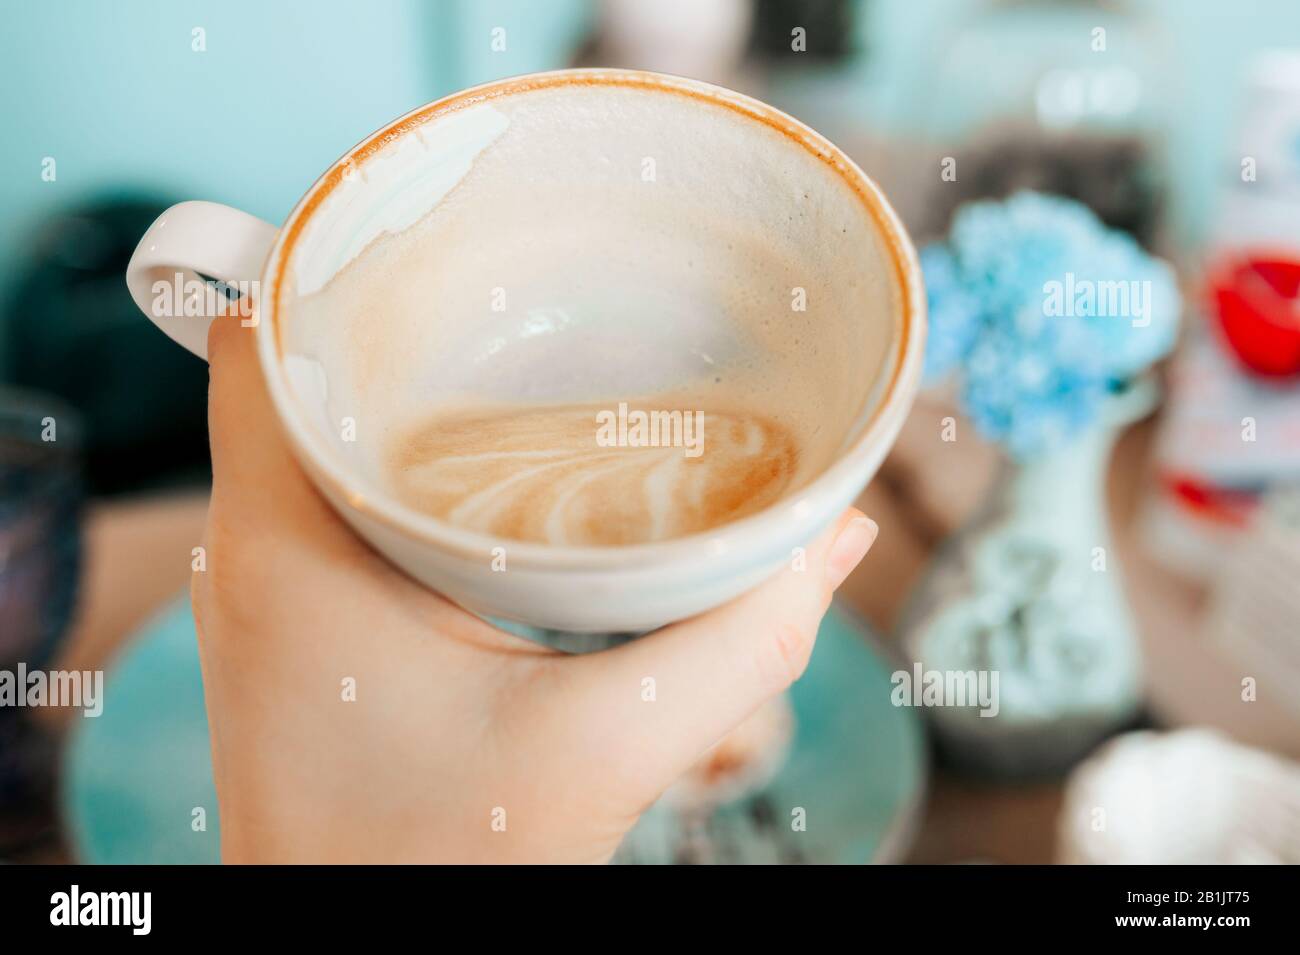 Elegante tazza in porcellana bianca semi-vuota con cappuccino, i resti di schiuma sulle pareti della tazza. Mangiare in un bellissimo caffè in colori menta Foto Stock